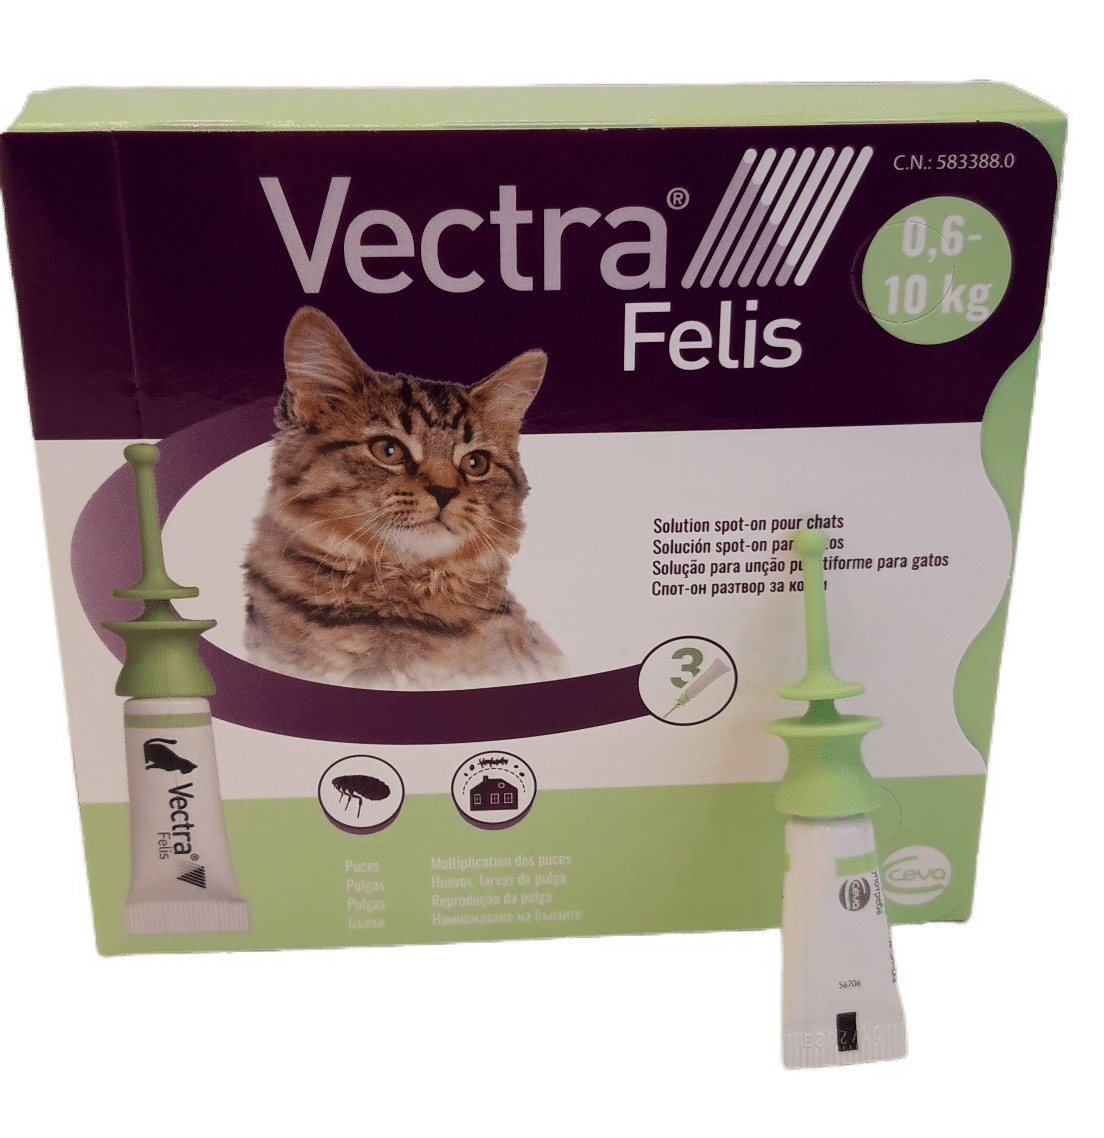 vectra felis pour chat